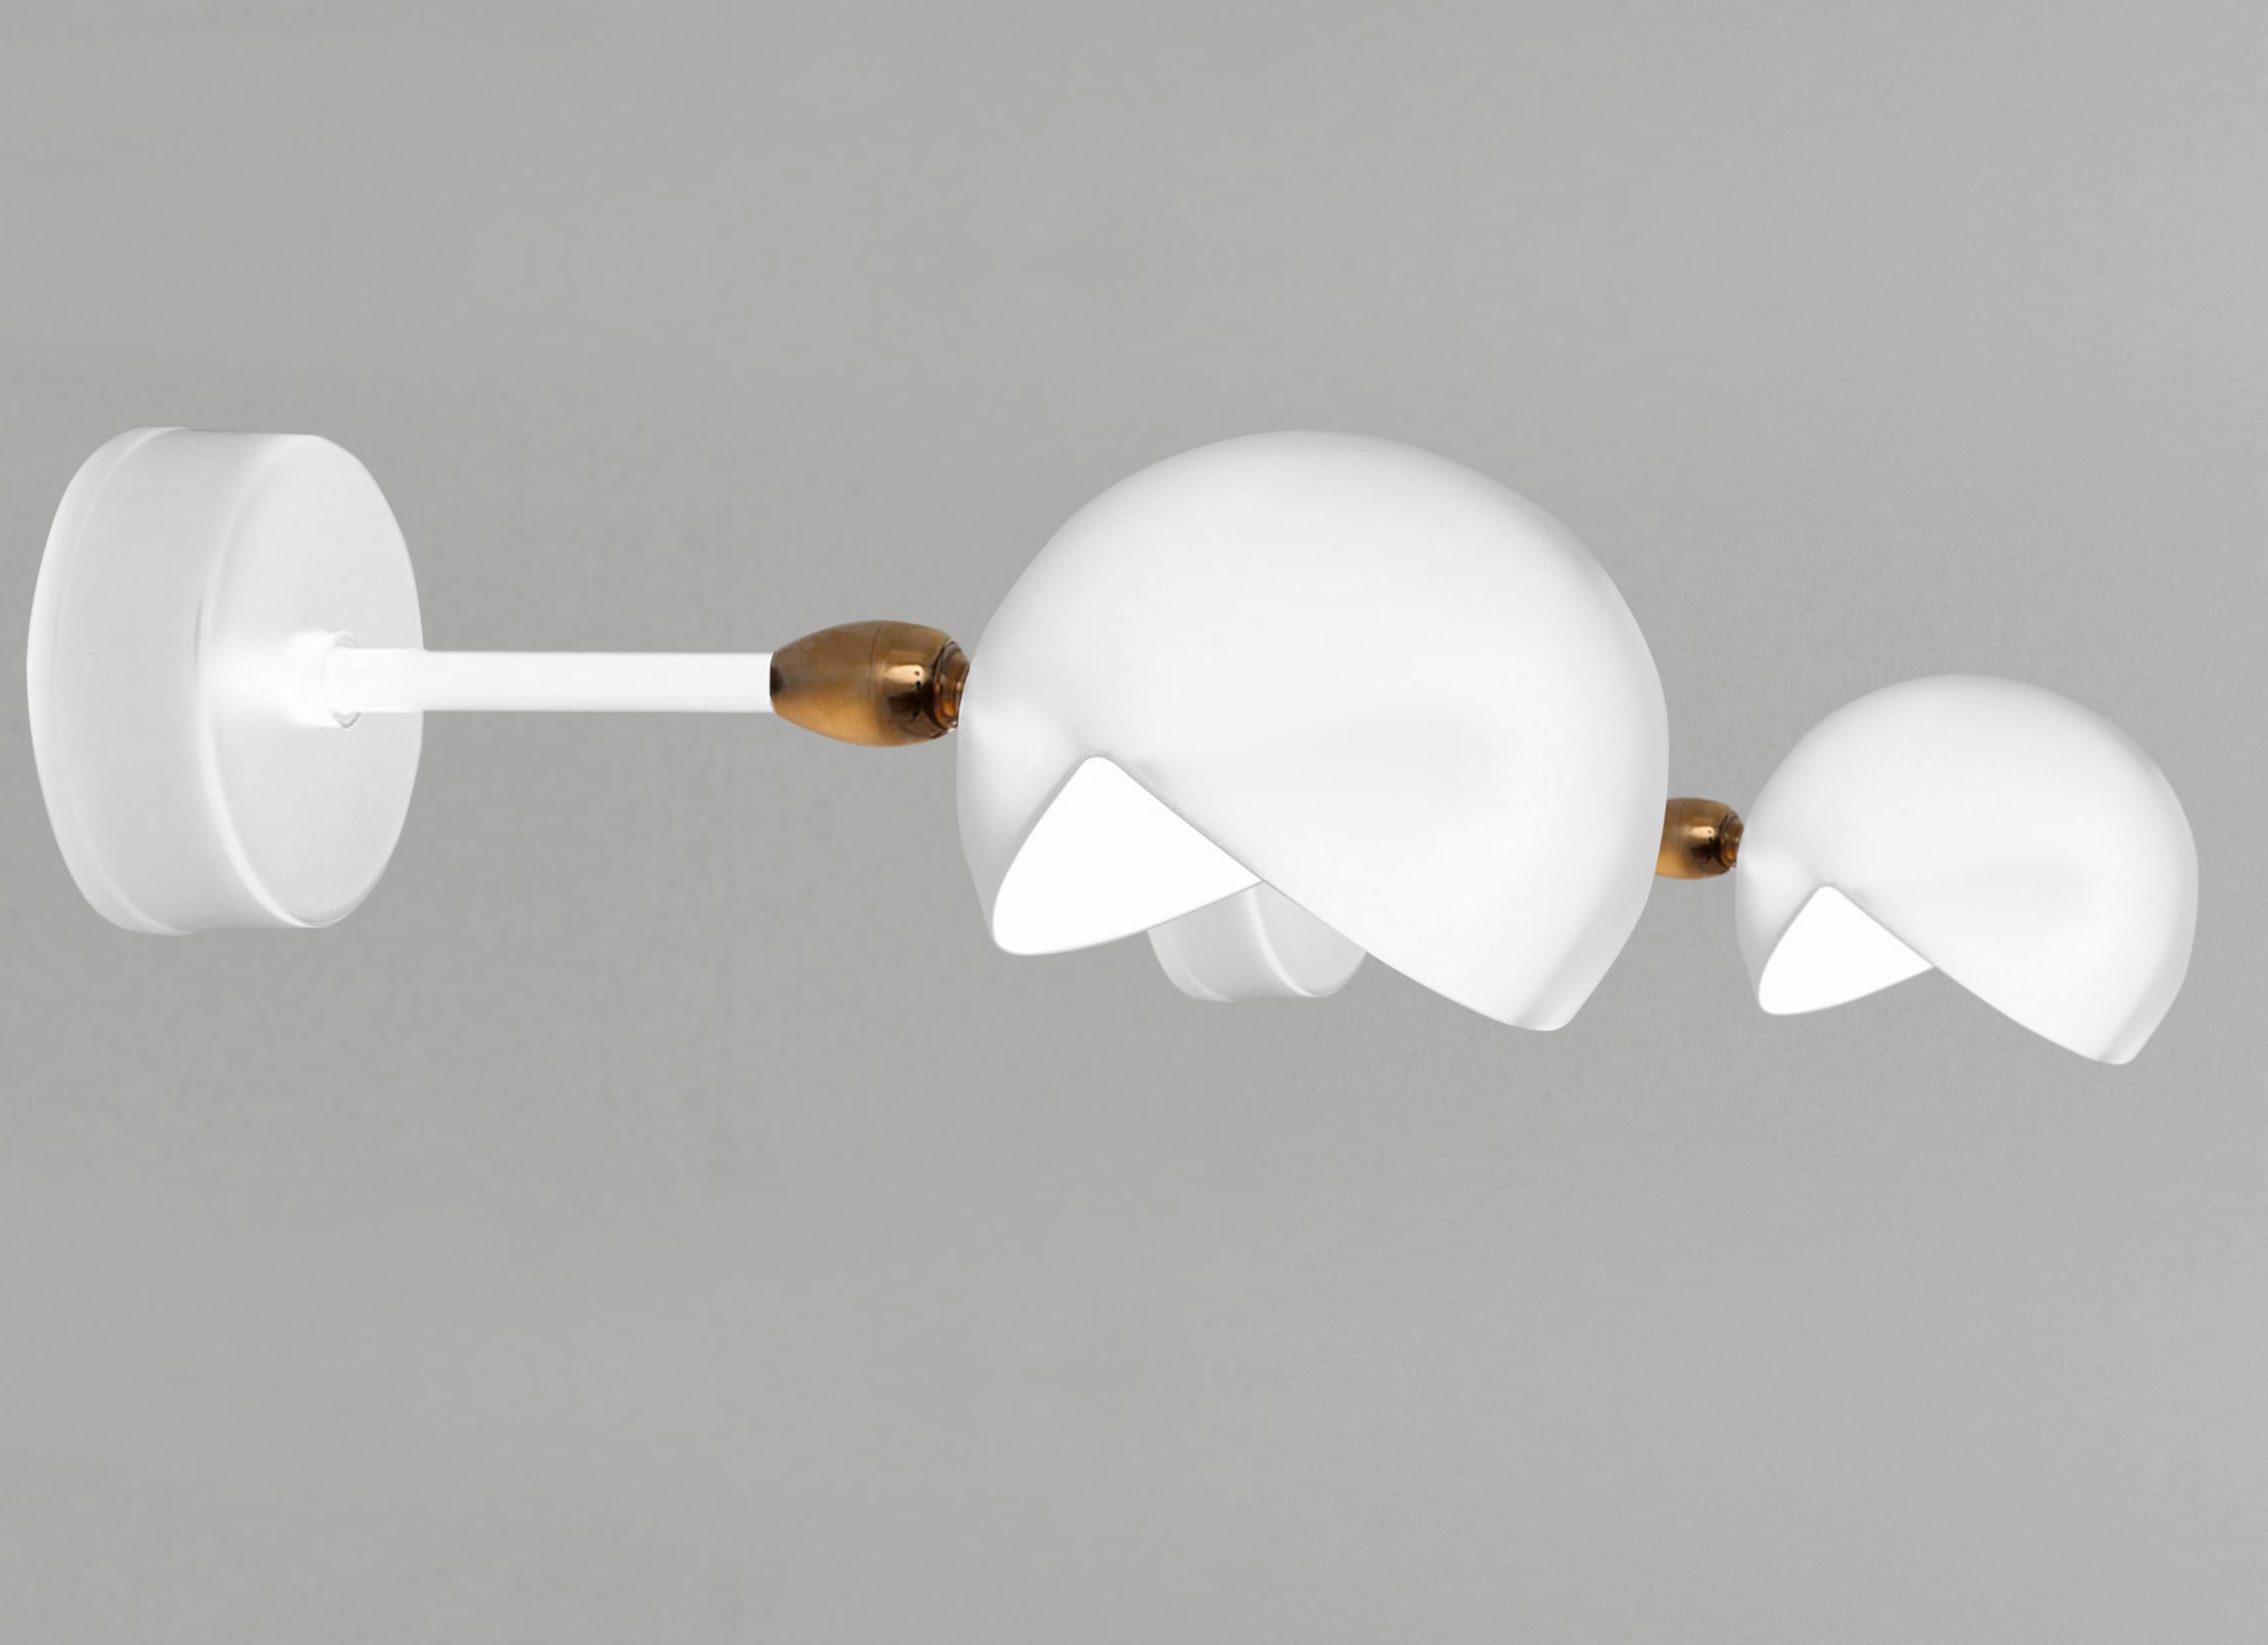 Wandleuchte Modell 'Eye Wall Lamp', entworfen von Serge Mouille im Jahr 1956.

Hergestellt von Editions Serge Mouille in Frankreich. Die Herstellung der Lampen, Wandleuchten und Stehlampen erfolgt in handwerklicher Weise mit den gleichen Materialien